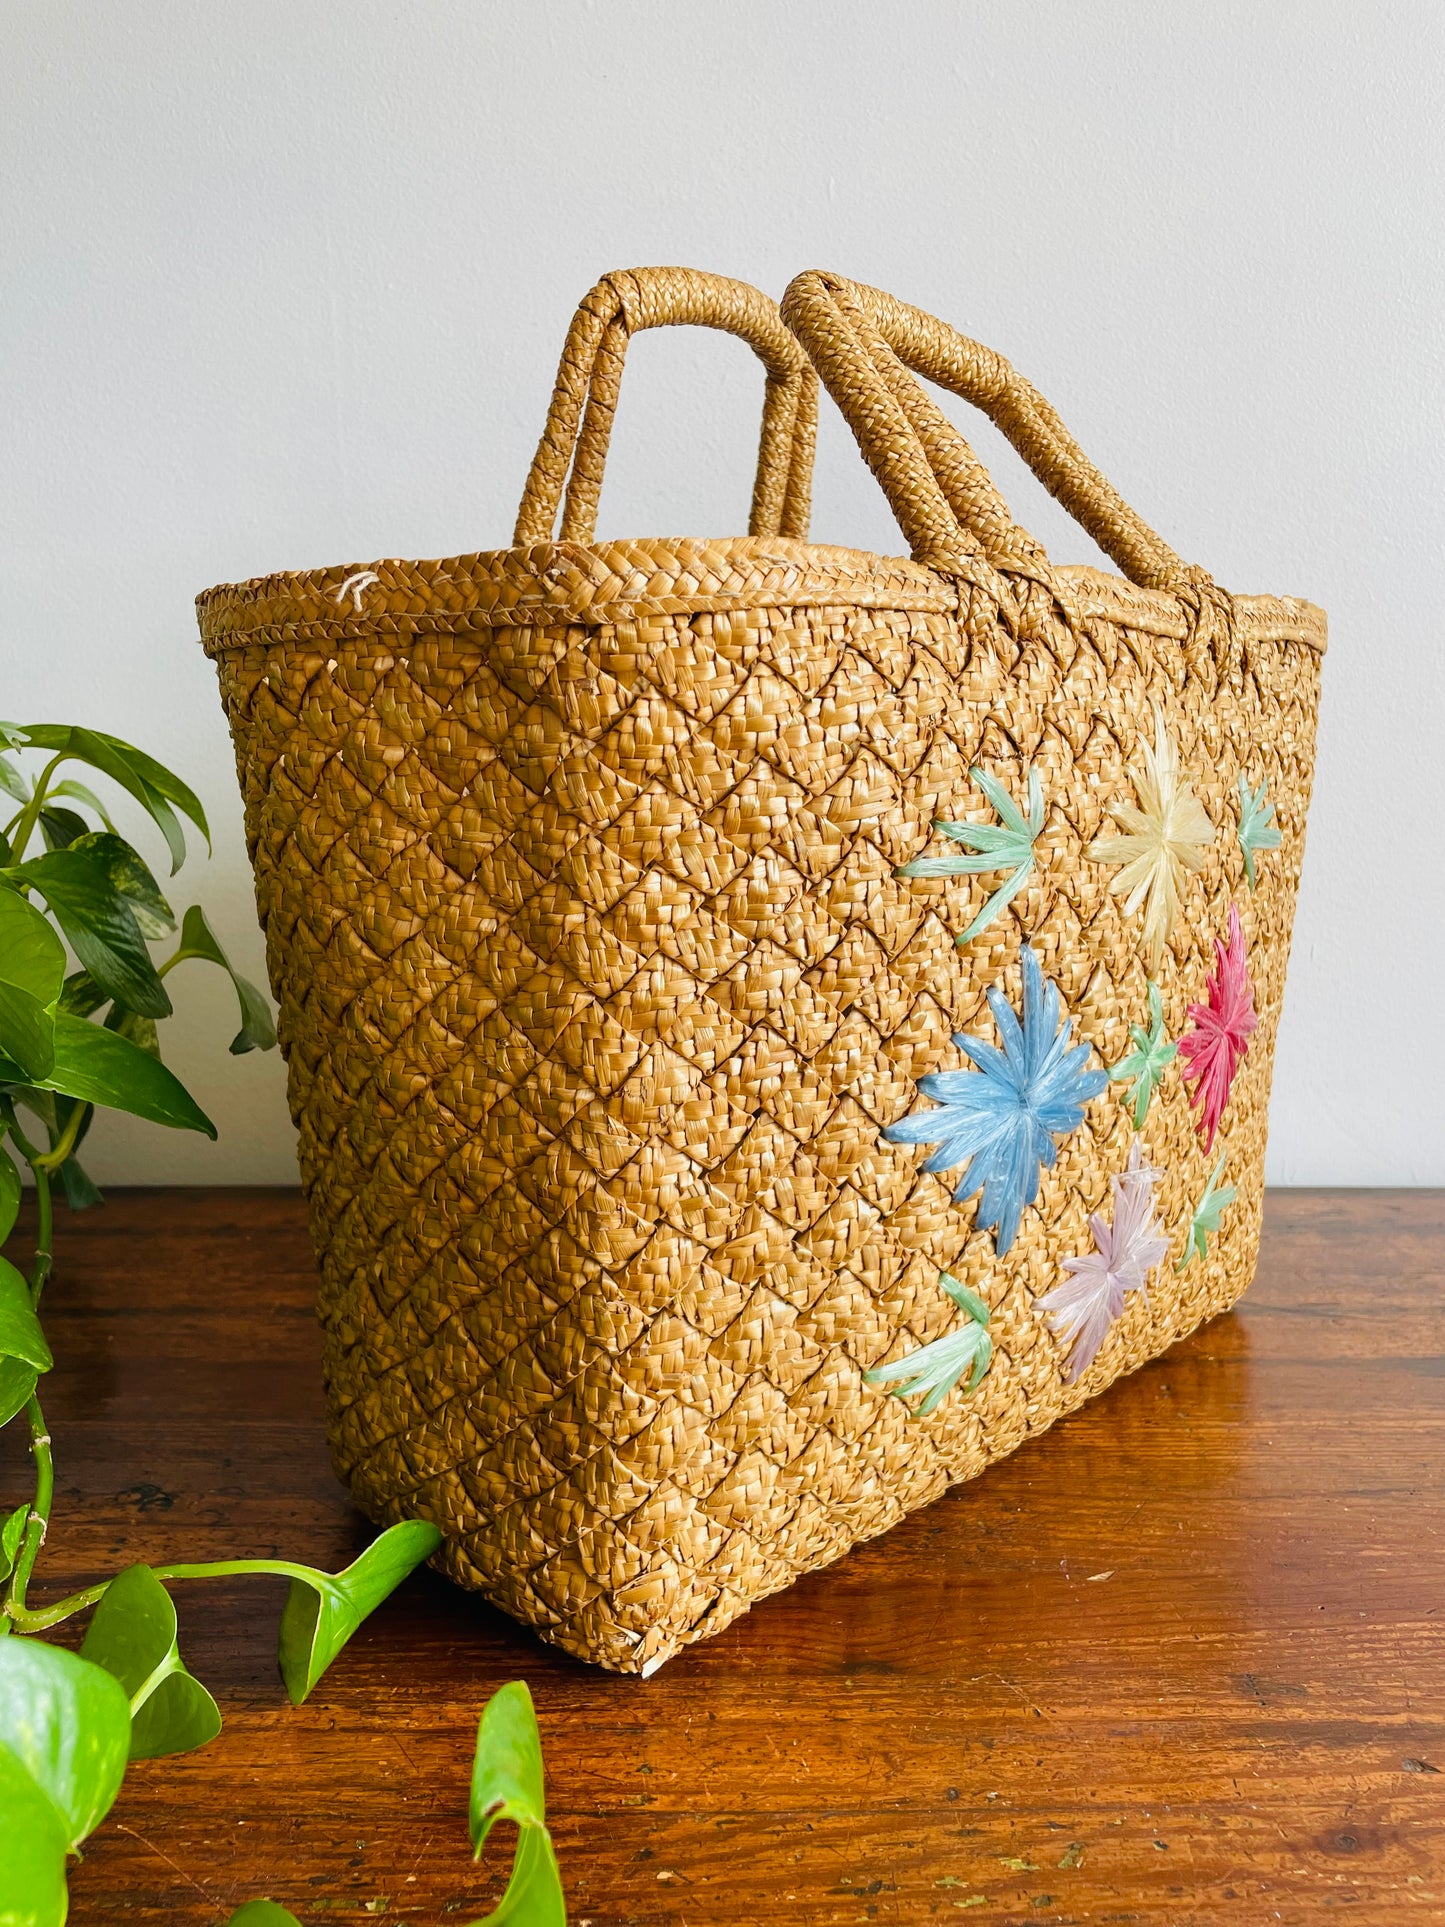 Woven Straw Beach Bag Purse with Raffia Starburst Flower Design